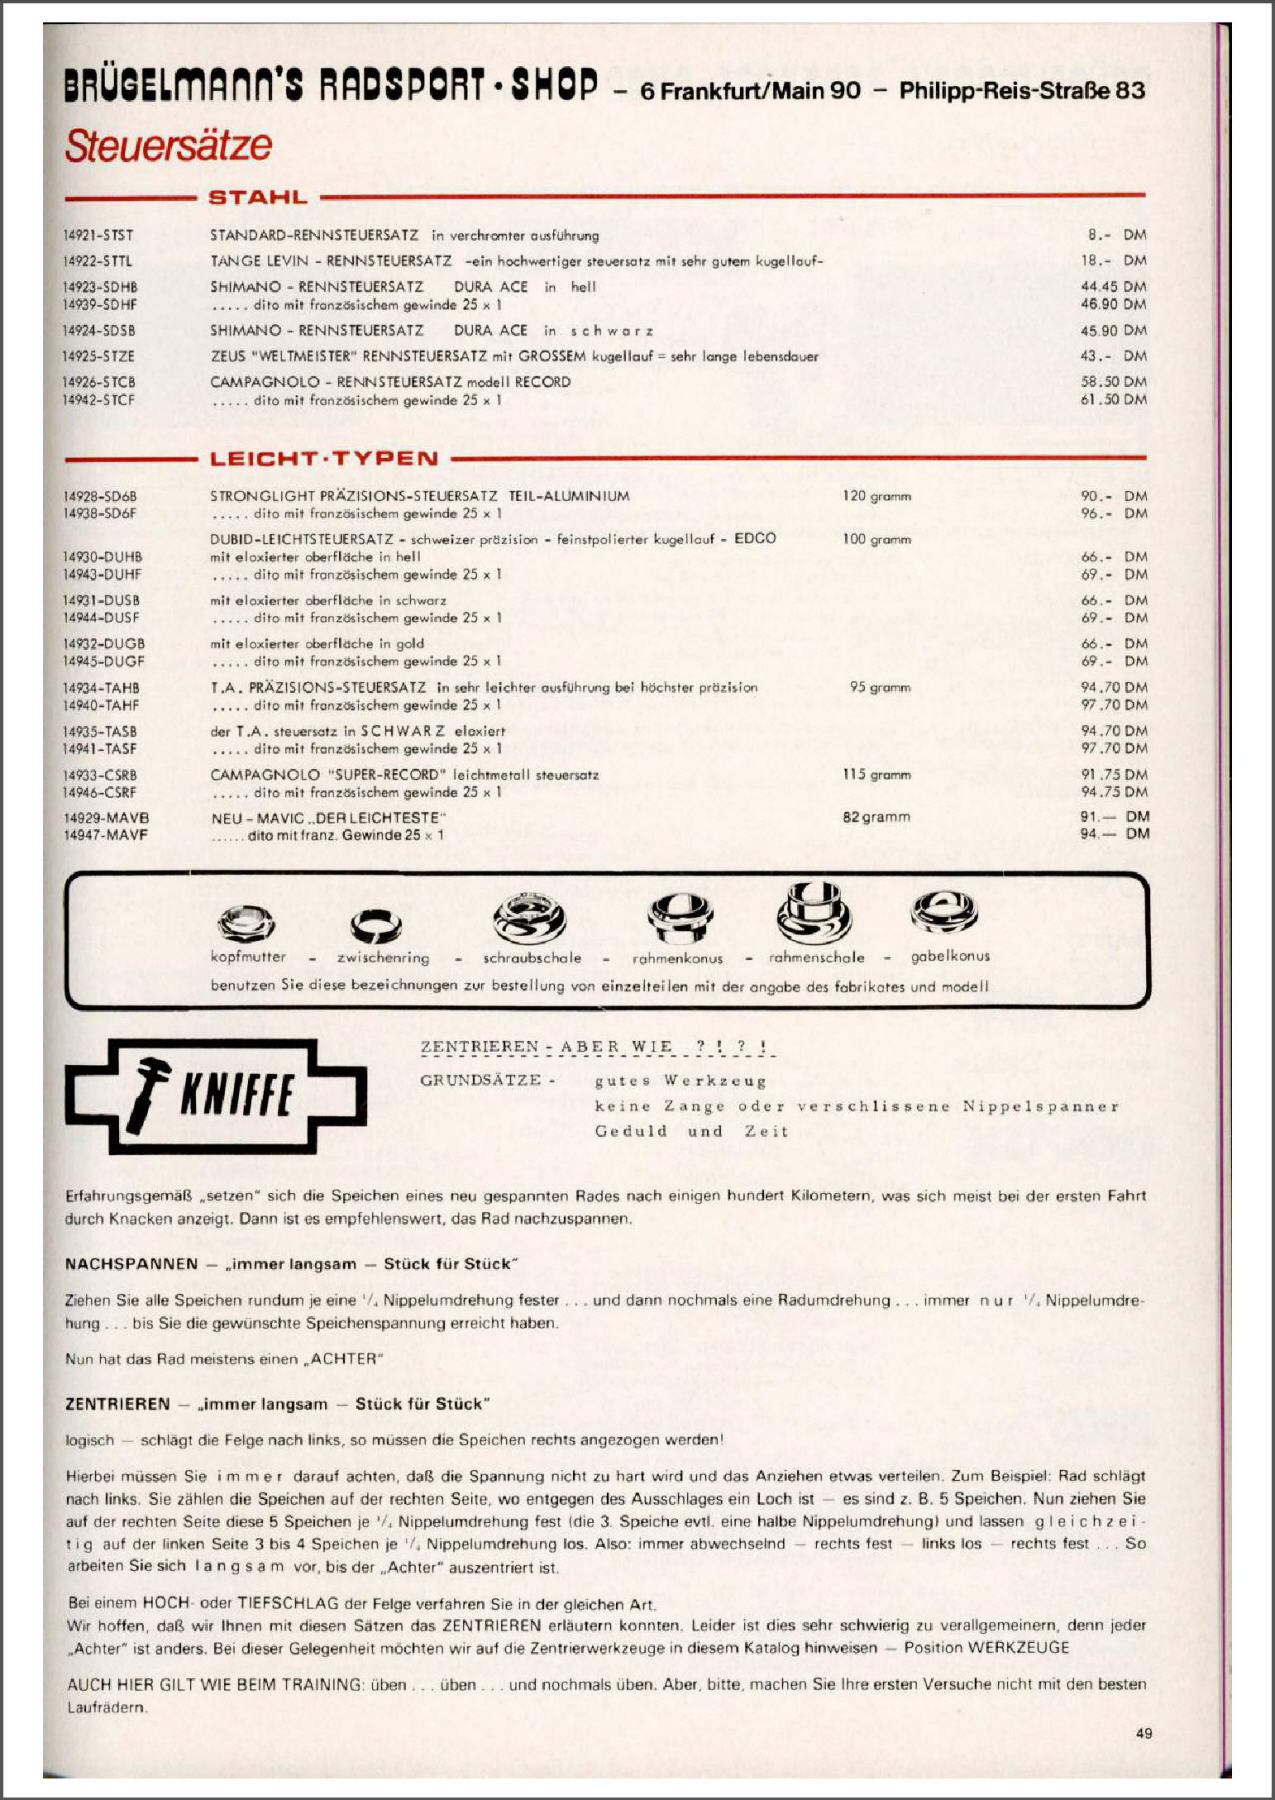 Brügelmann catalog (1981)